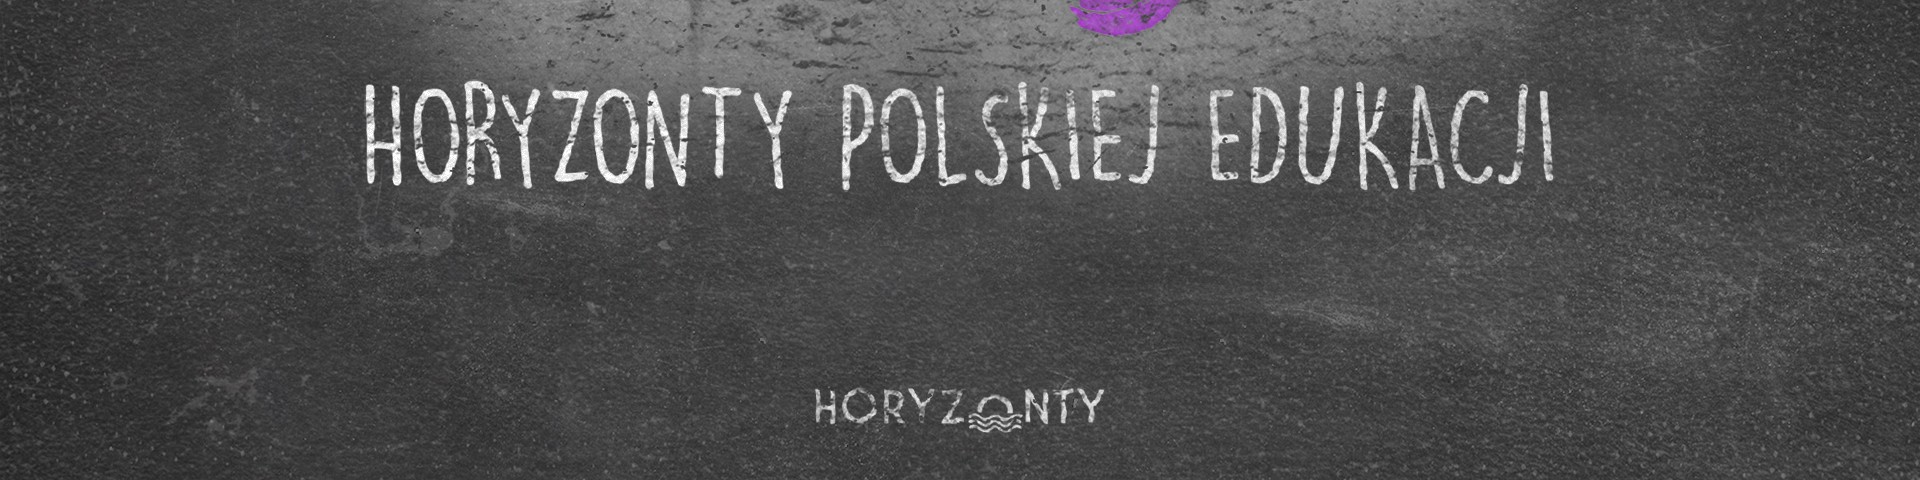 Horyzonty polskiej edukacji – róbmy swoje